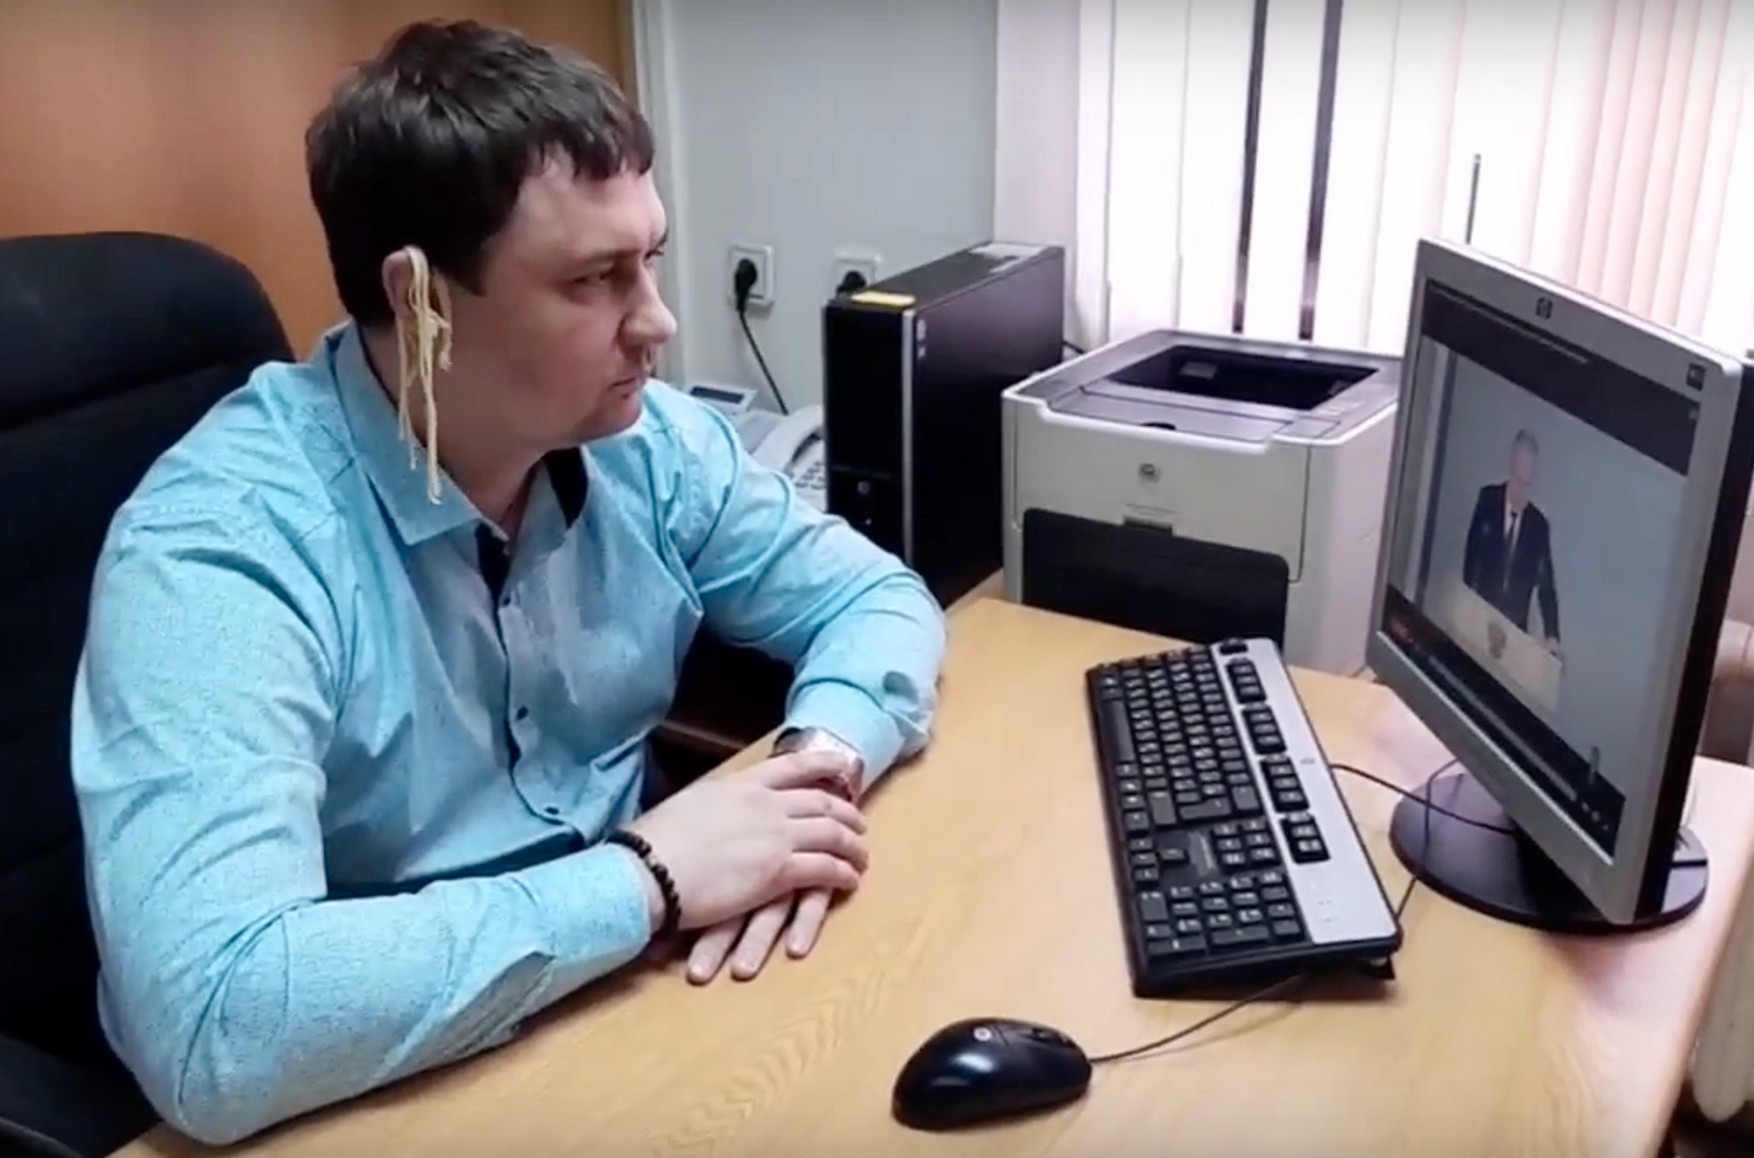 Самарский депутат-коммунист прослушал обращение Путина с лапшой на ушах. В КПРФ пообещали принять меры